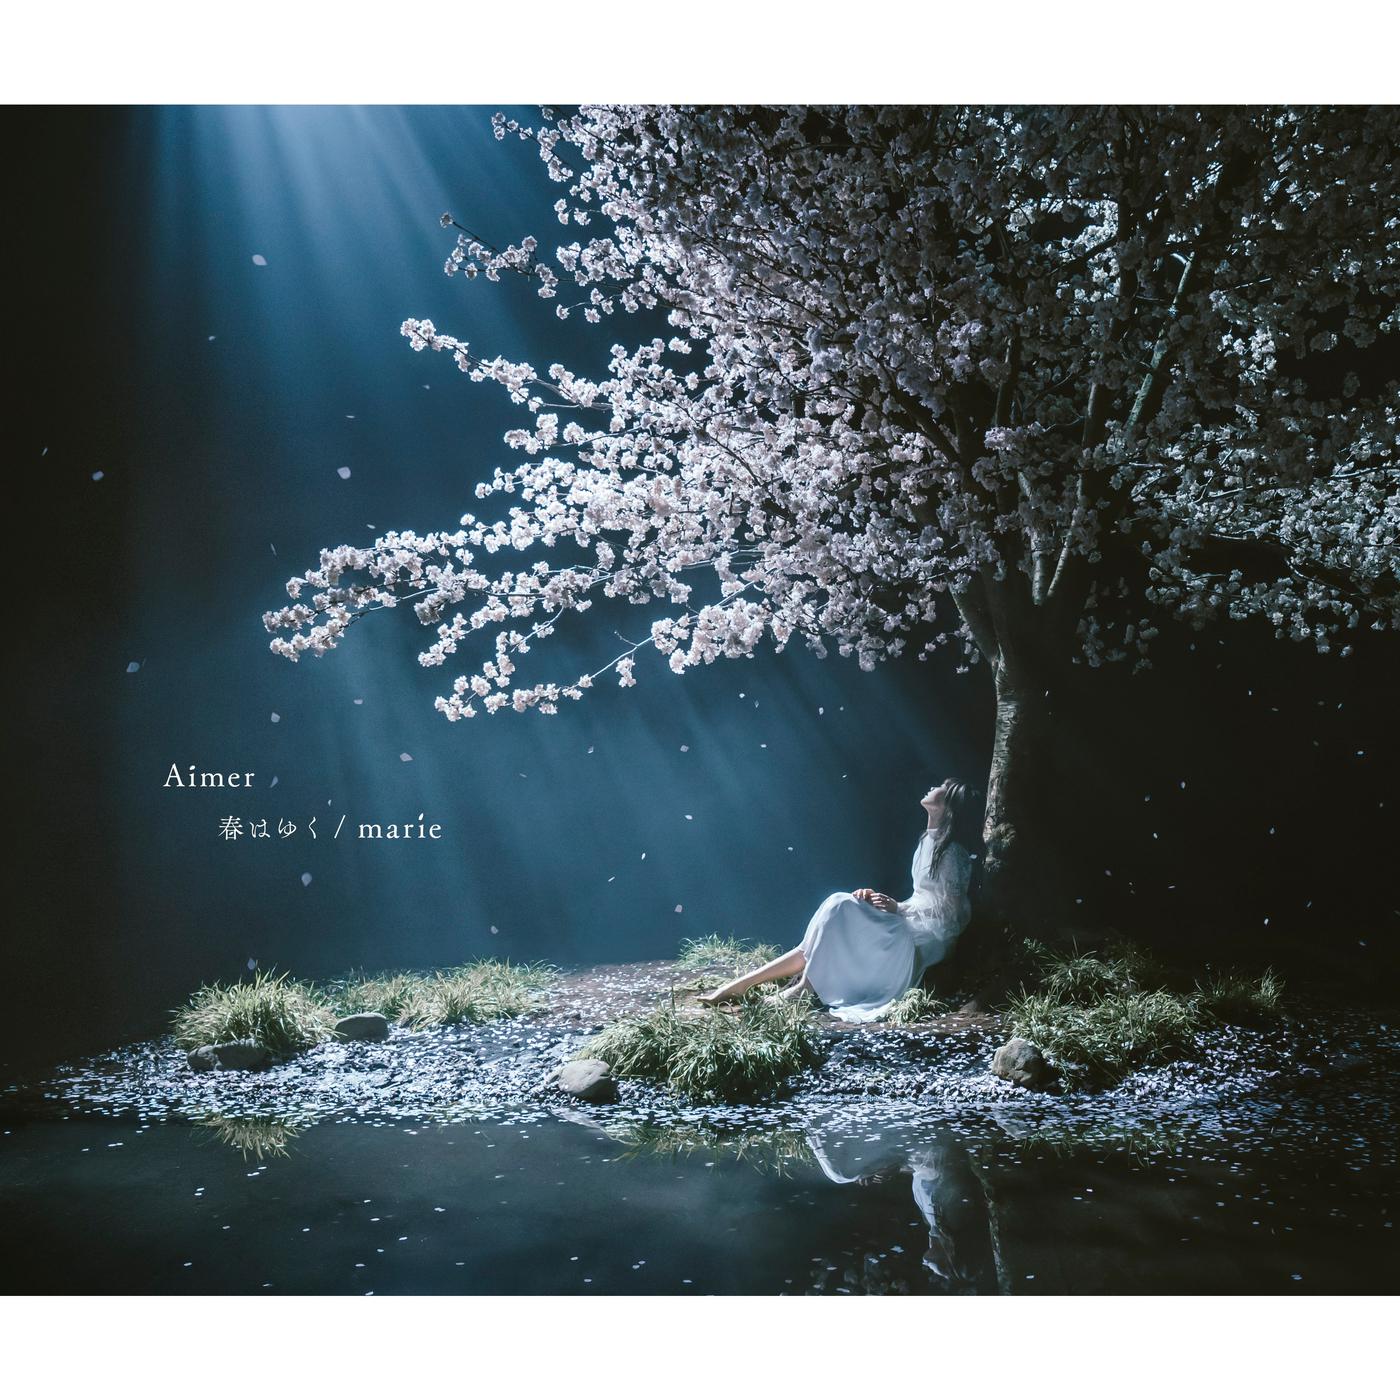 春はゆく歌词 歌手Aimer-专辑春はゆく / marie - (春逝 / marie)-单曲《春はゆく》LRC歌词下载